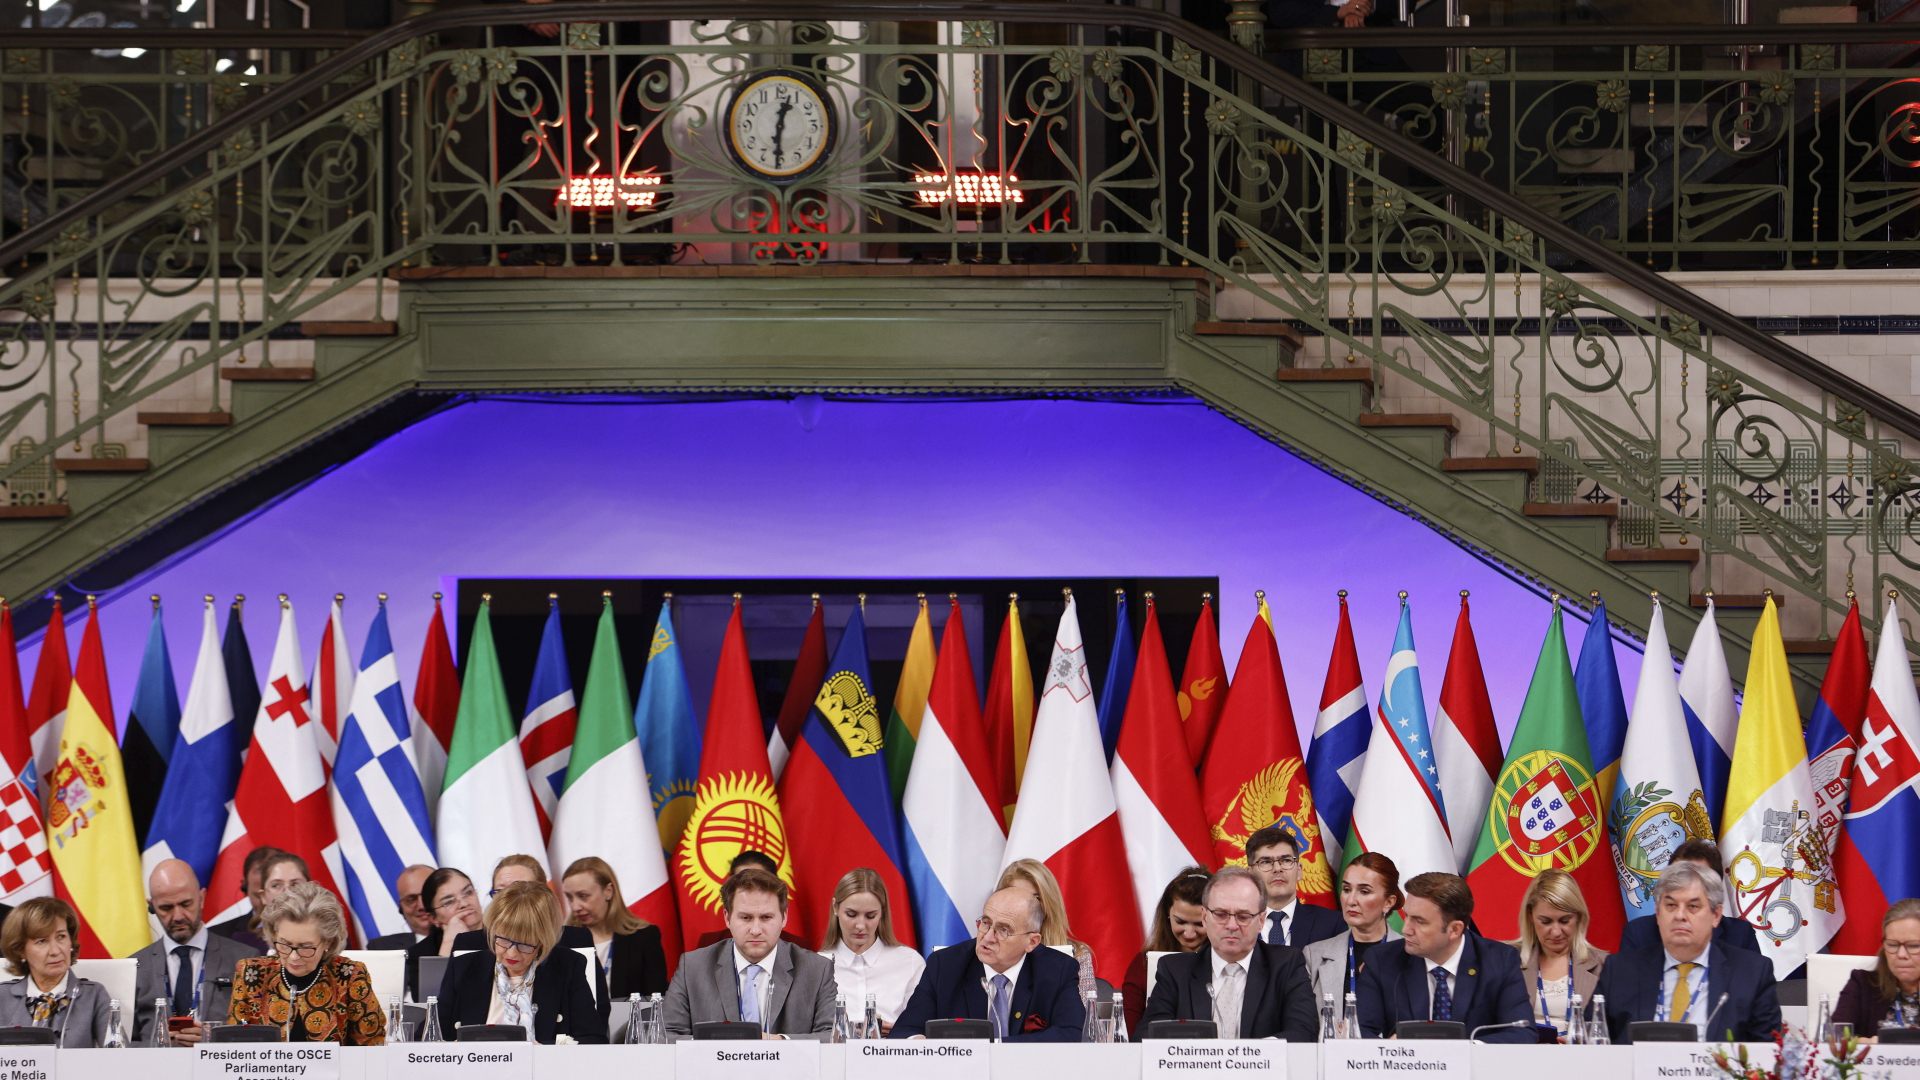 Der Außenminister von Polen, hält eine Abschlussrede während des Treffens der Organisation für Sicherheit und Zusammenarbeit in Europa (OSZE).